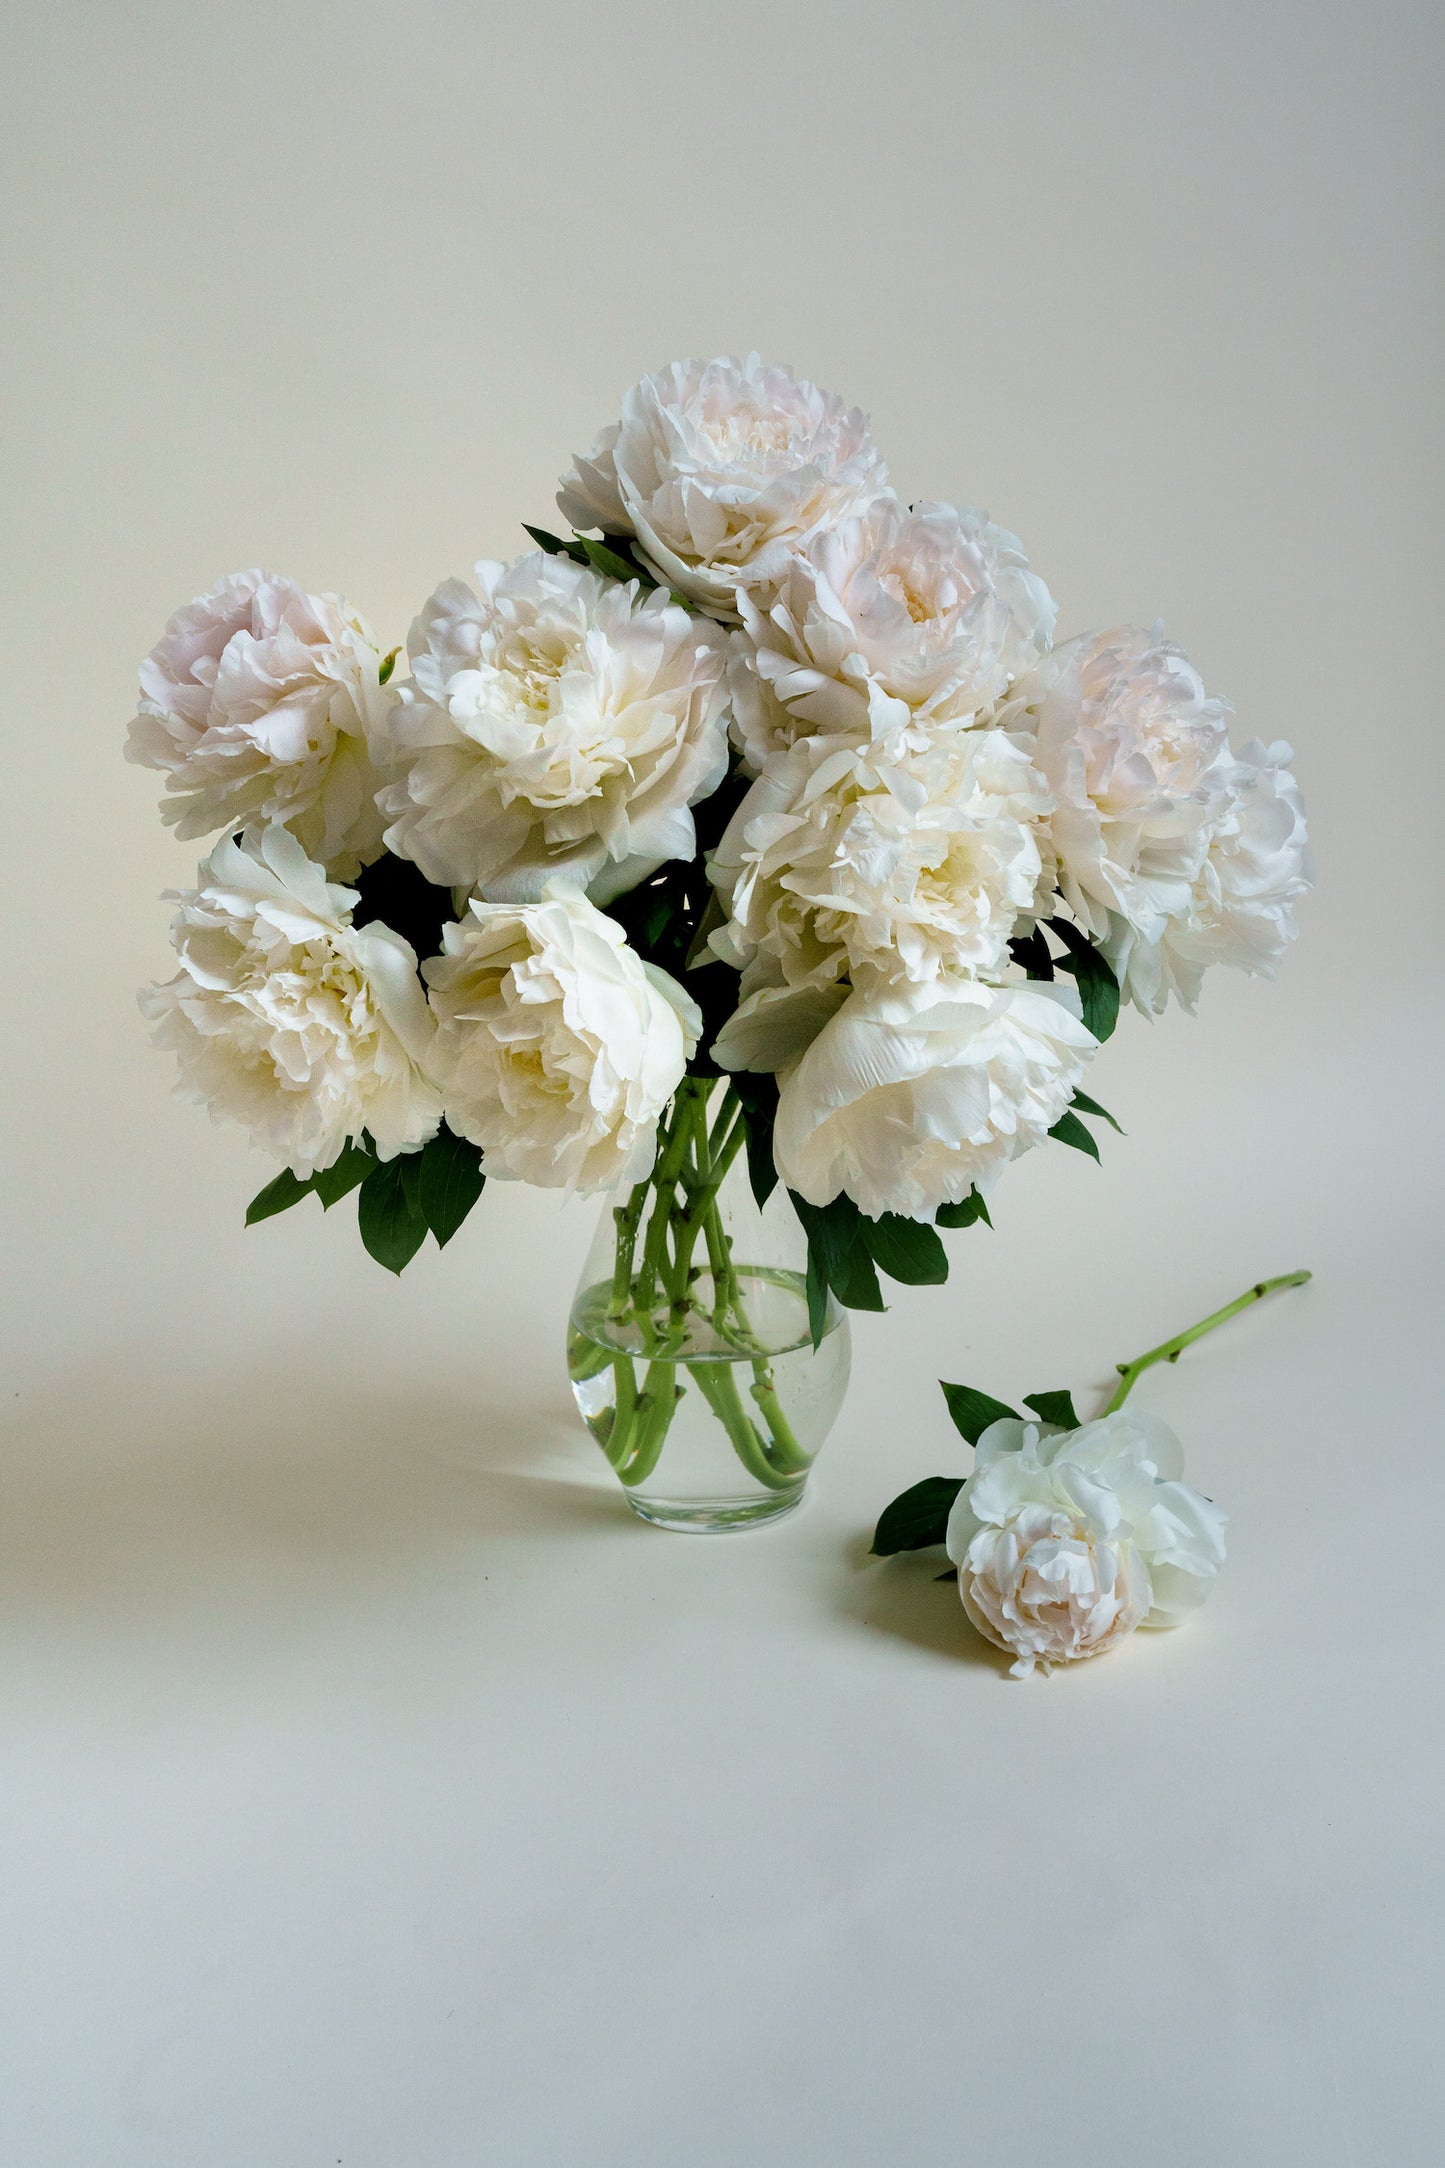 Witte pioenrozen laten bezorgen? Unieke bloemen, met passie geteeld plukvers en razendsnel bezorgd!